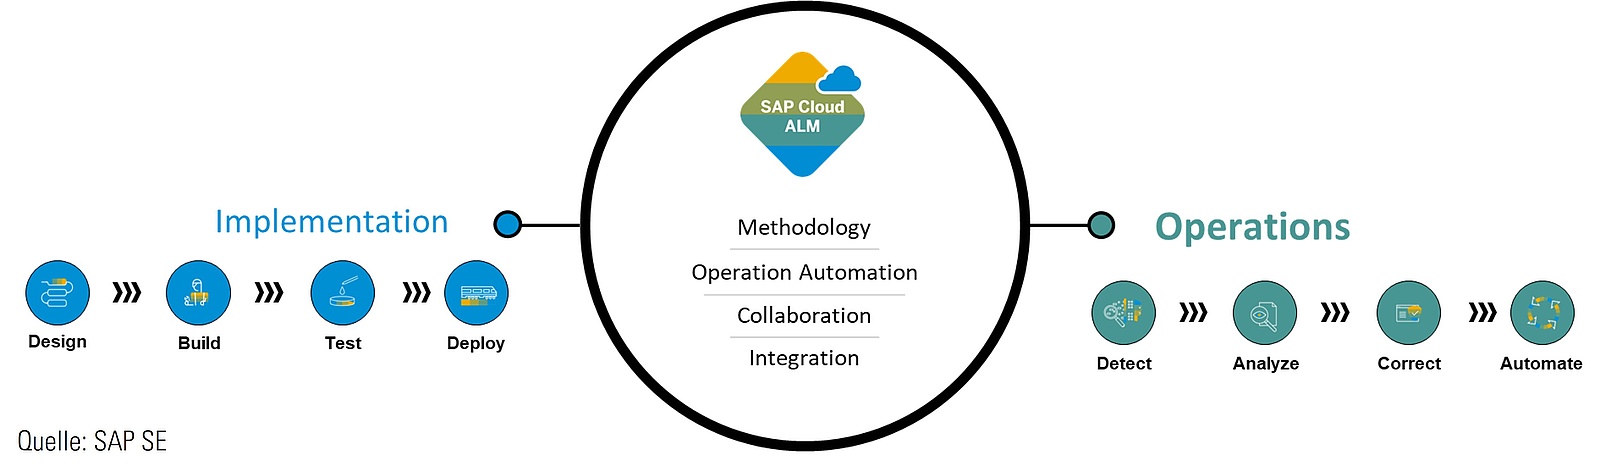 Nachhaltige ALM-Strategie – mit SAP Cloud ALM